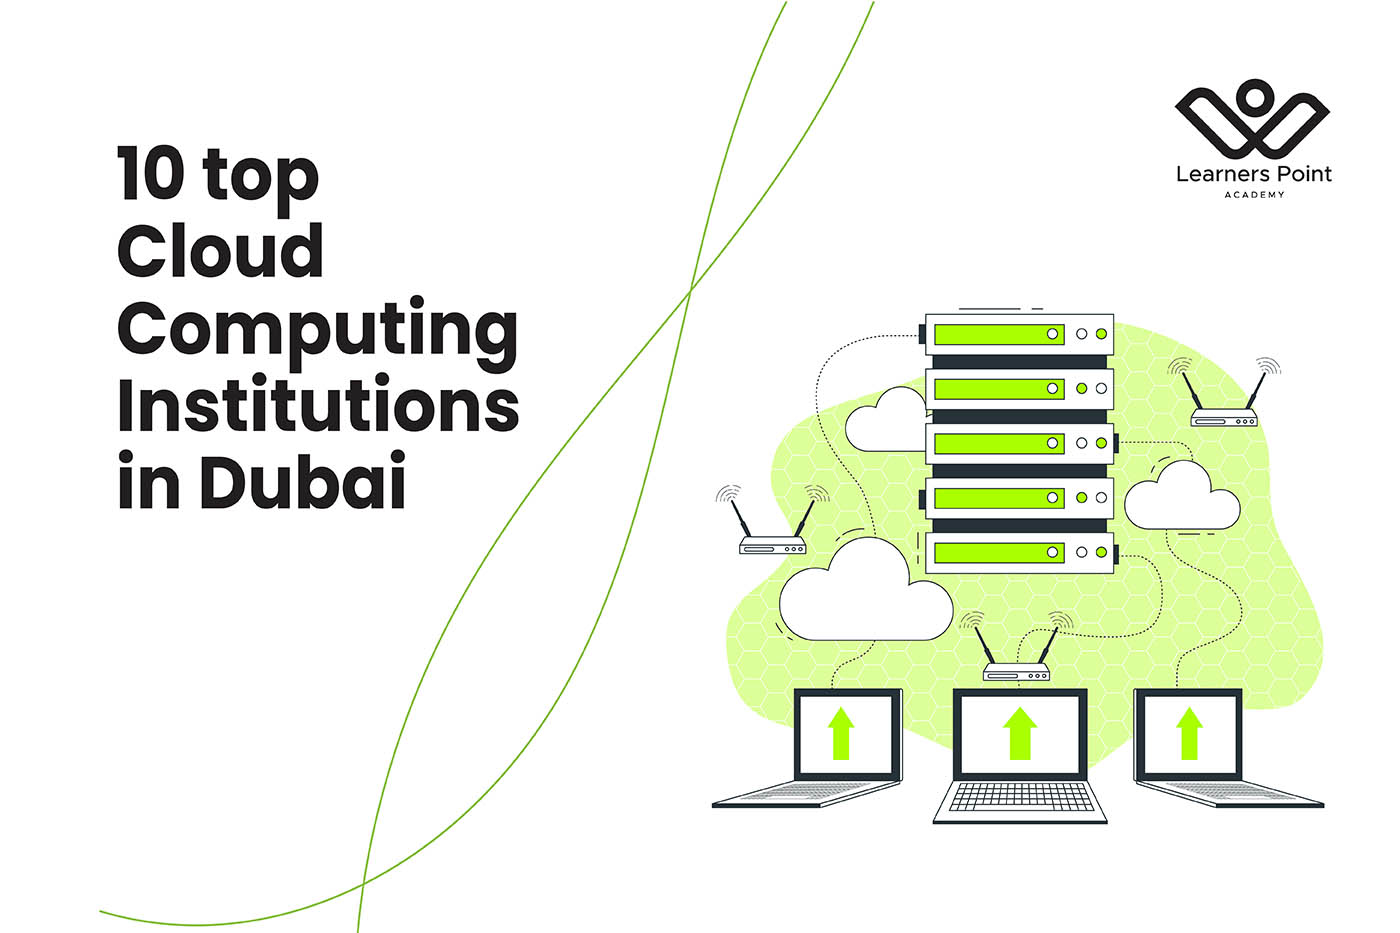 10 top Cloud Computing Institutions in Dubai